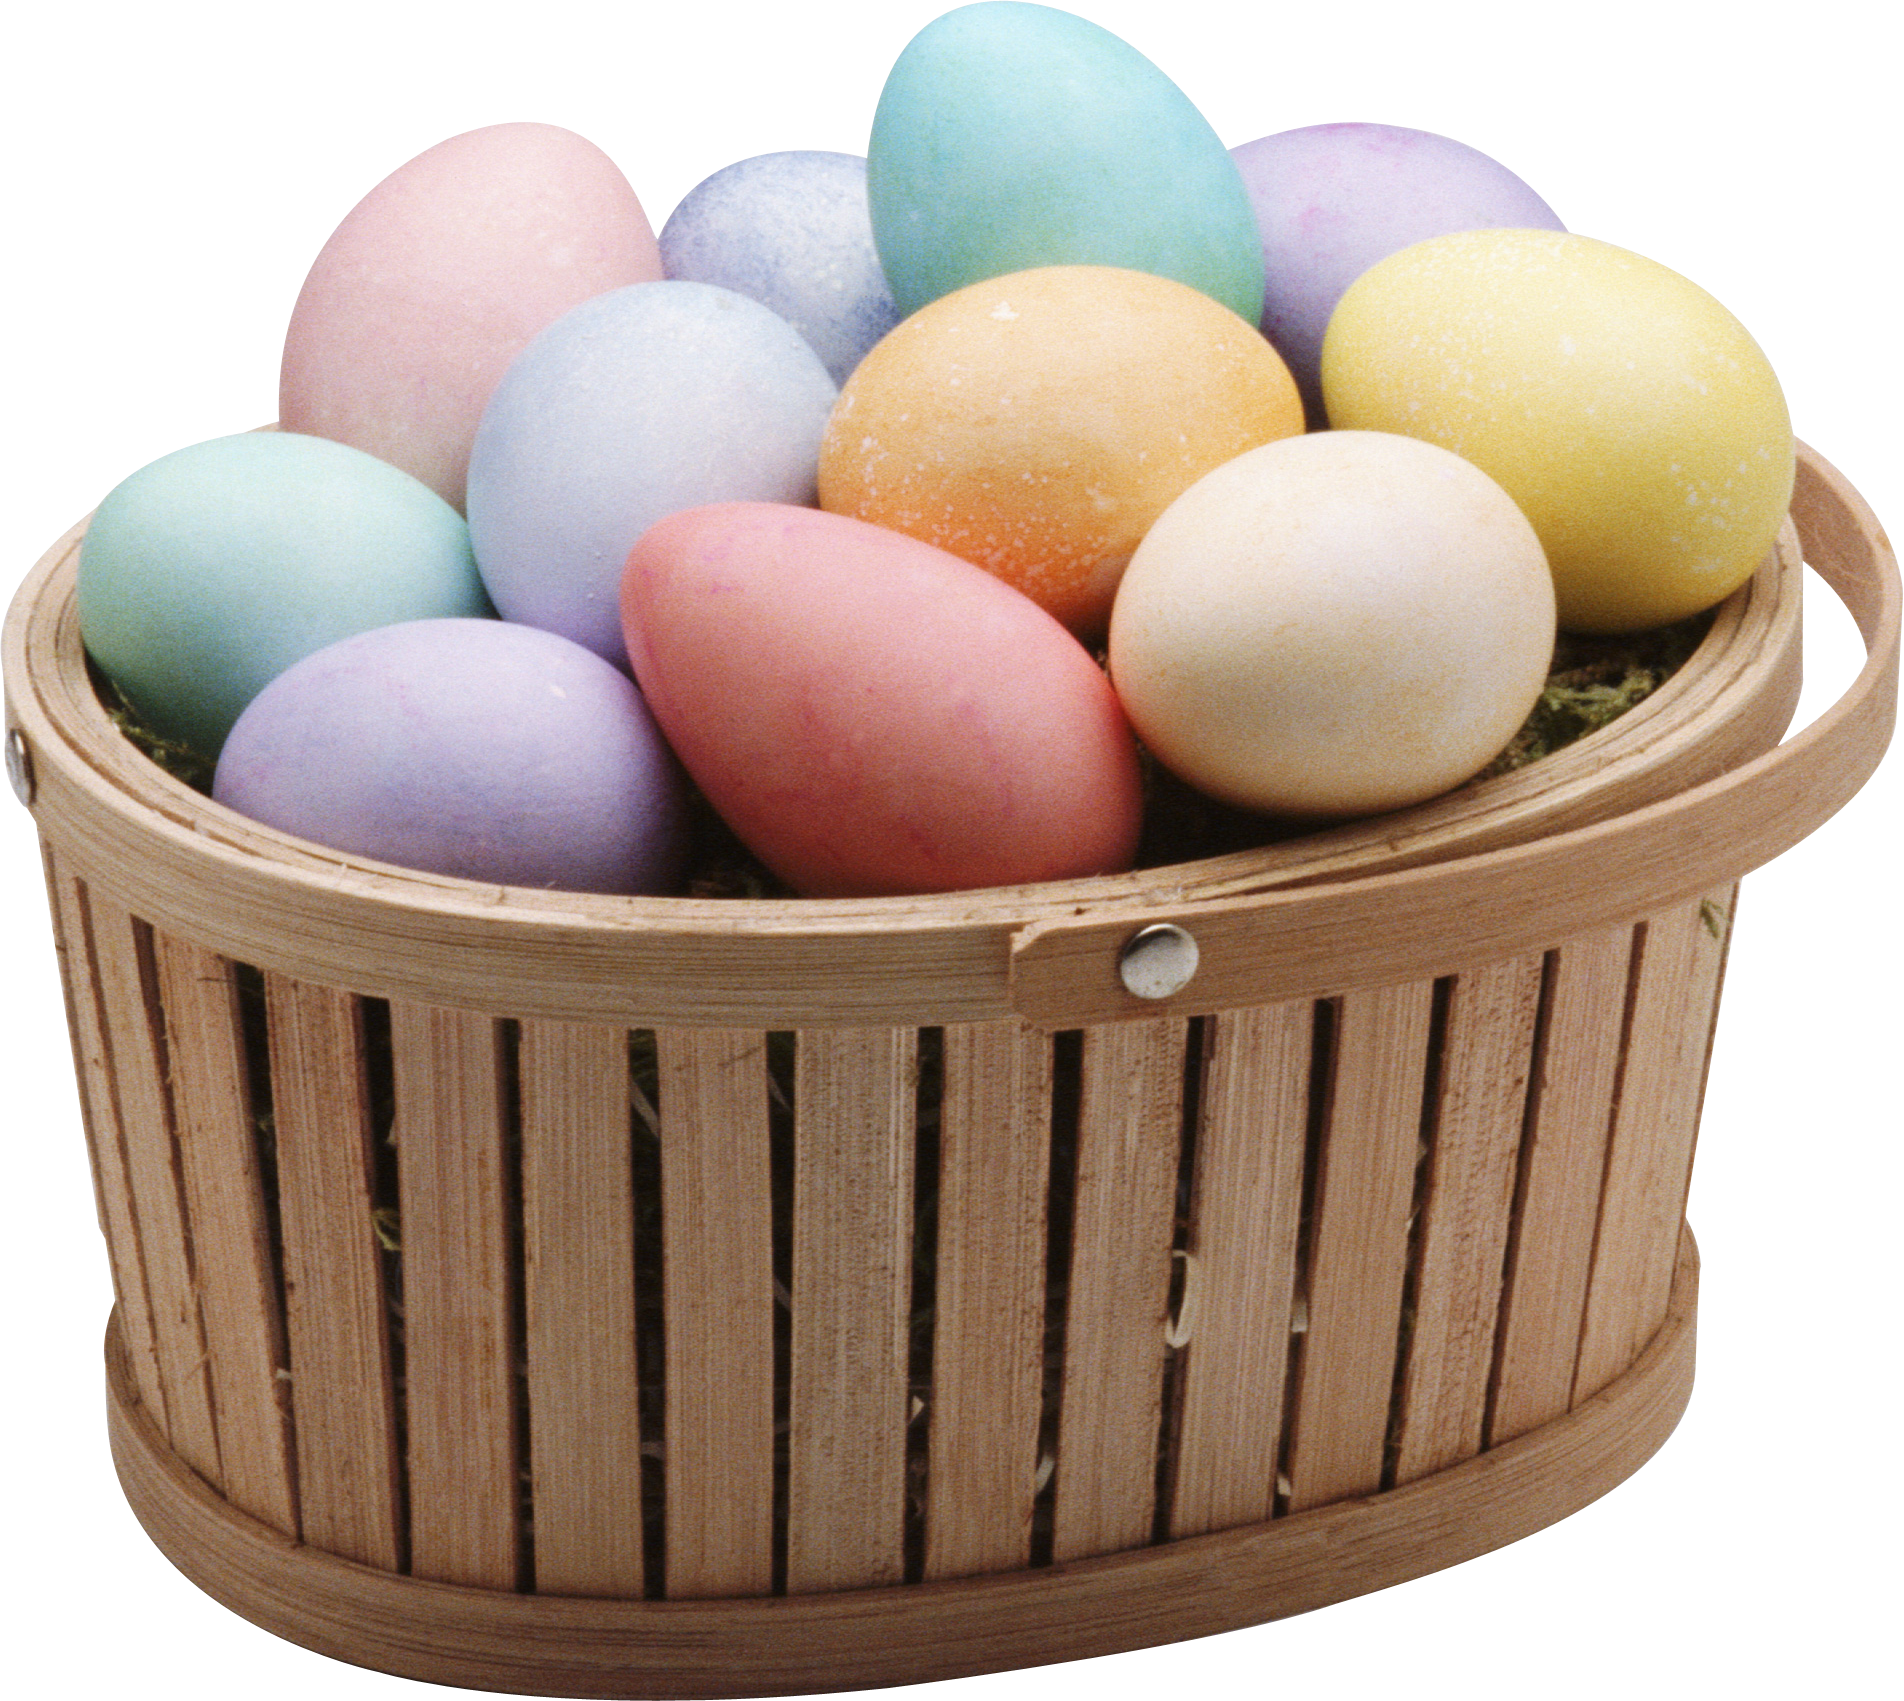 바구니에 다채로운 계란